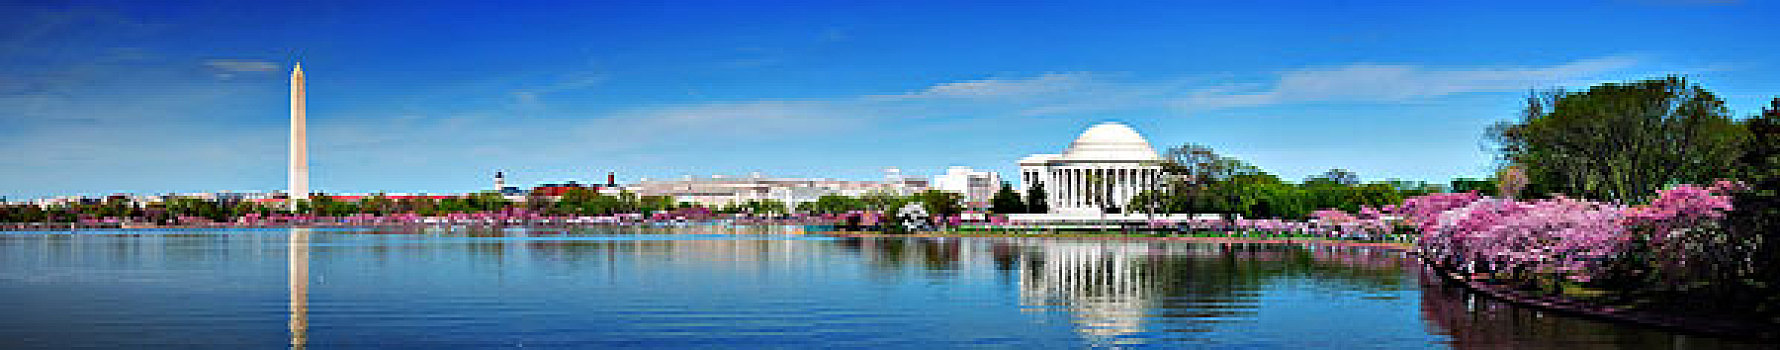 华盛顿特区,全景,华盛顿纪念碑,杰斐逊,纪念,樱花